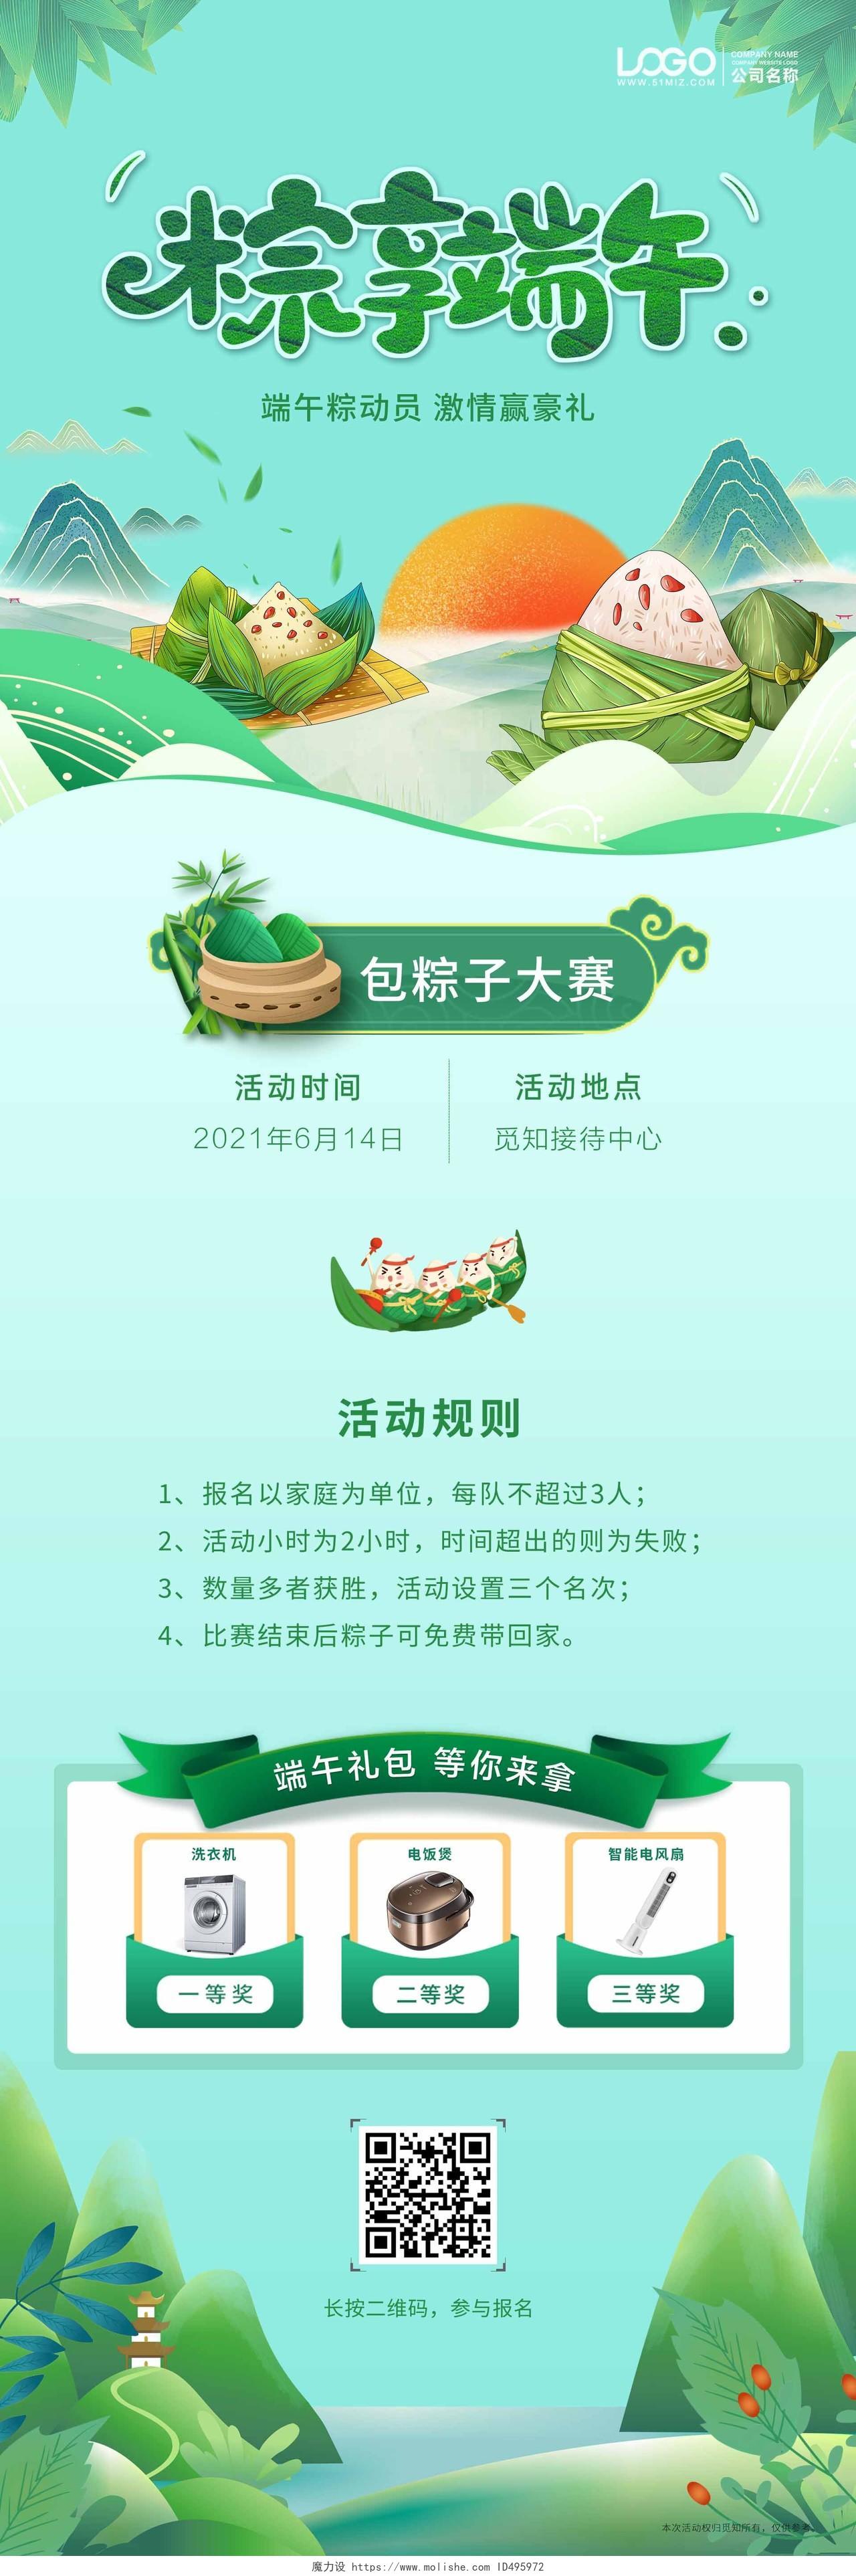 绿色清新插画风端午节活动手机ui长图端午节端午粽子活动ui手机海报